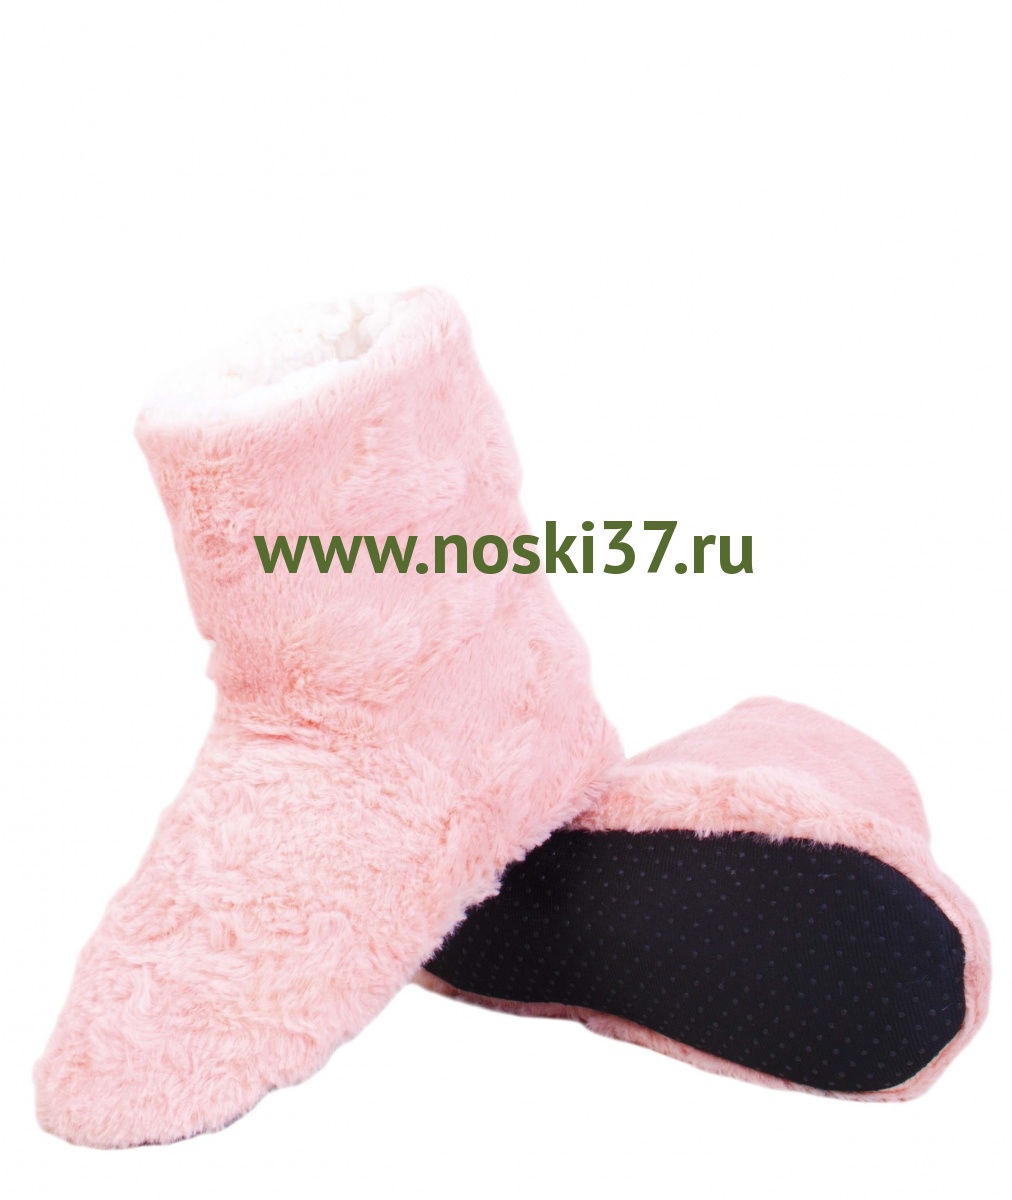 Носки- тапки женские "Socks" № 15-57 купить оптом и мелким оптом, низкие цены от магазина Комфорт(noski37) для всей семьи с доставка по всей России от производителя.